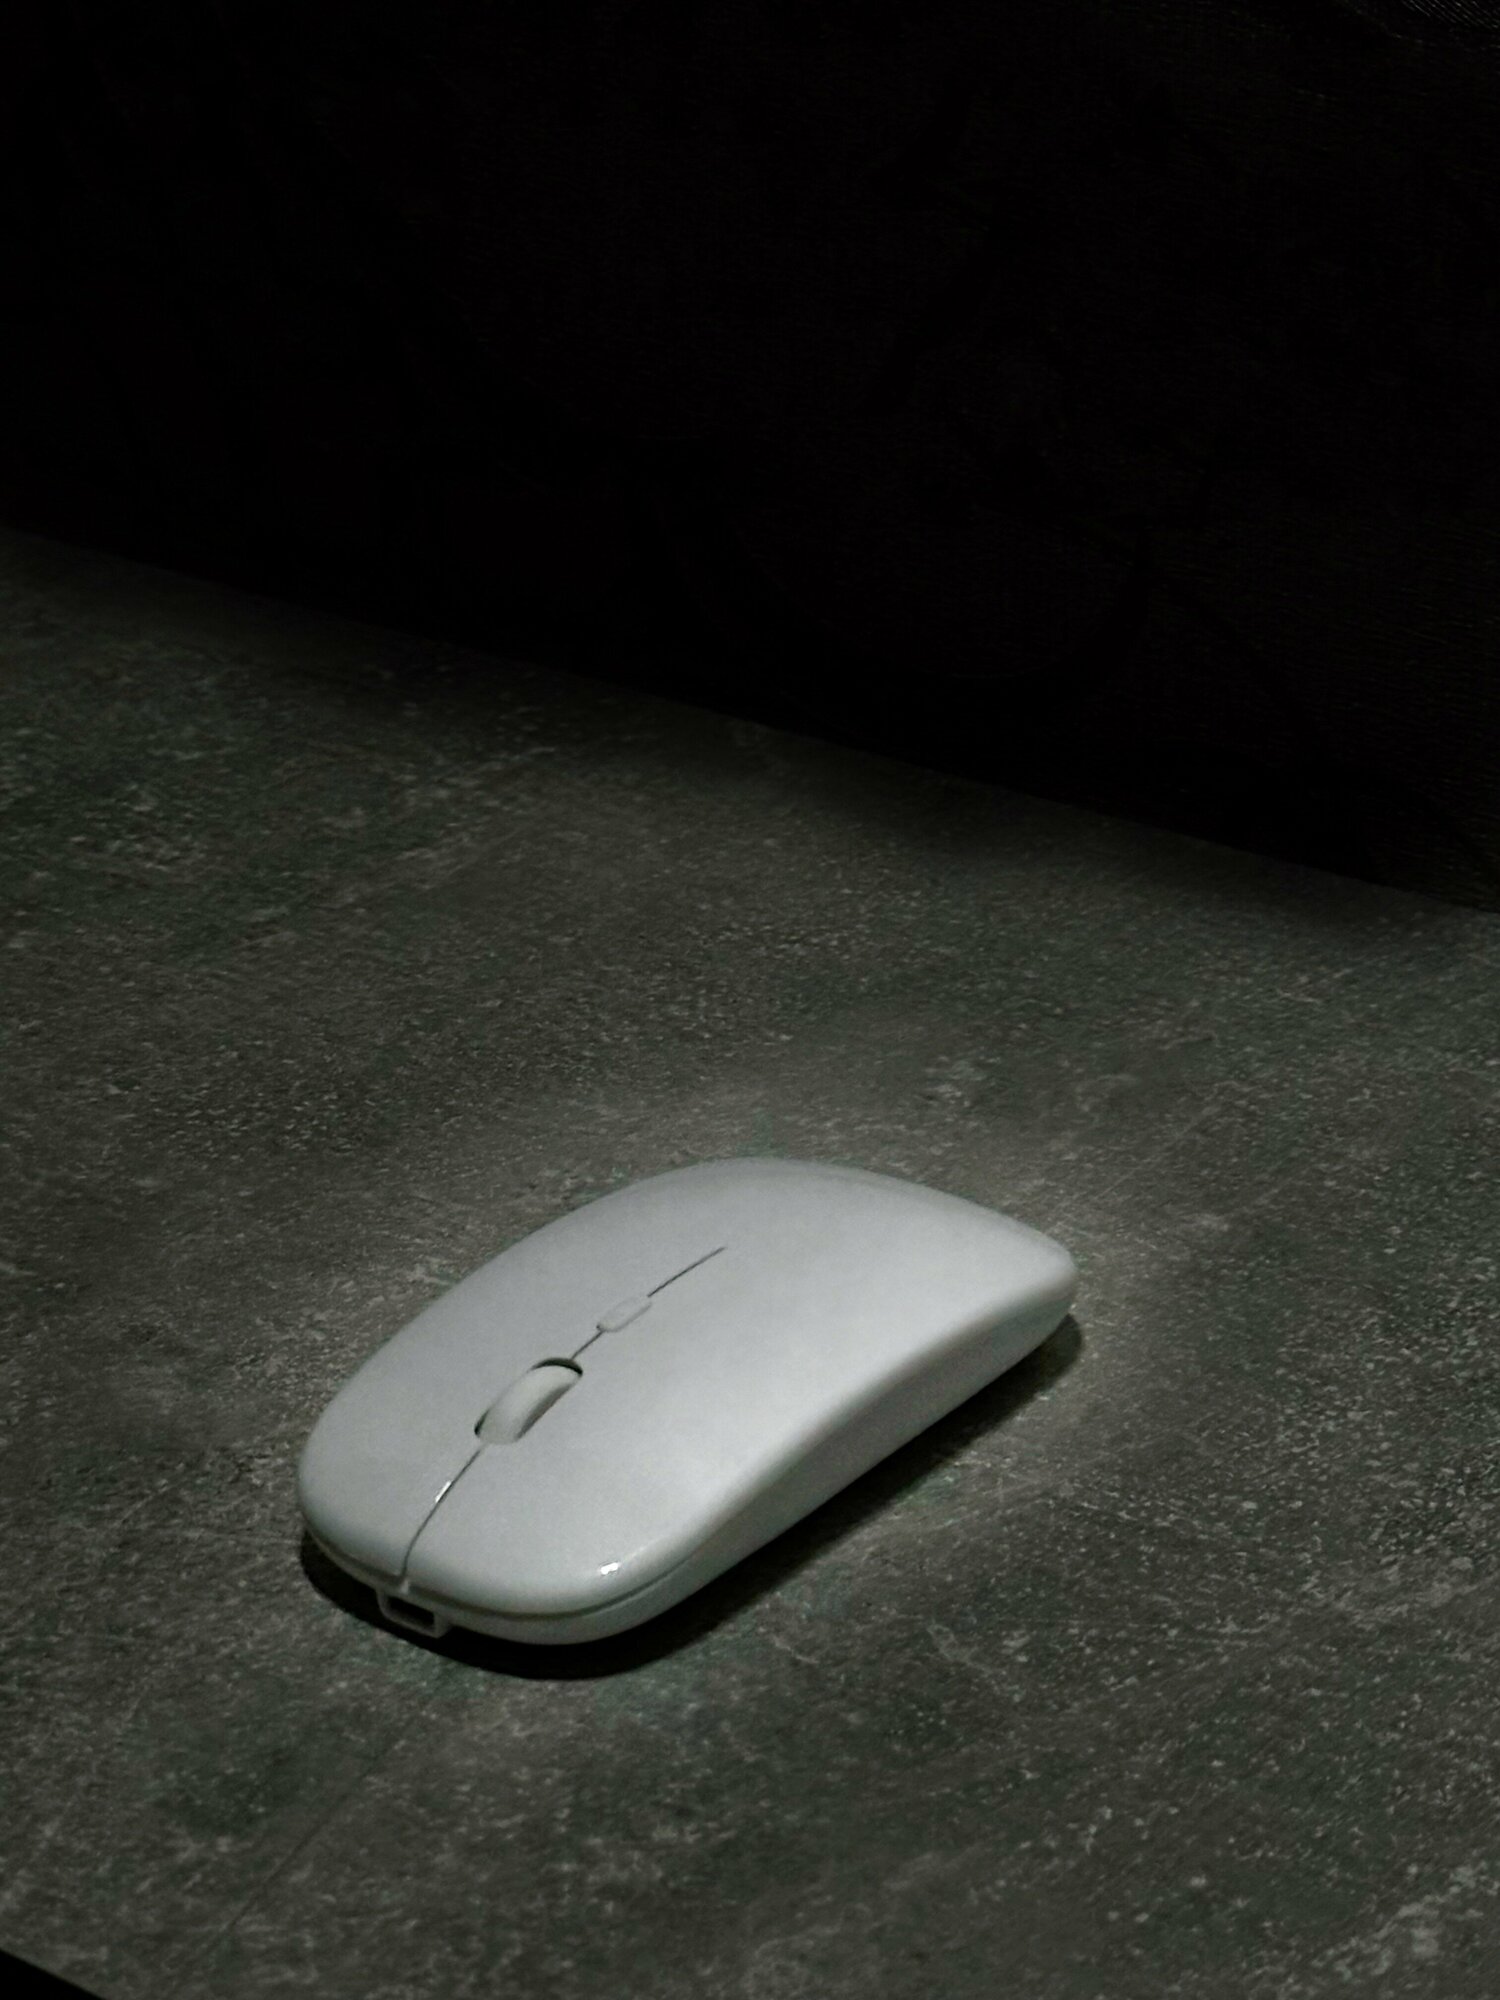 Беспроводная аккумуляторная мышь для ПК/ноутбука/макбука, 1600DPI, 2,4G, ультратонкая